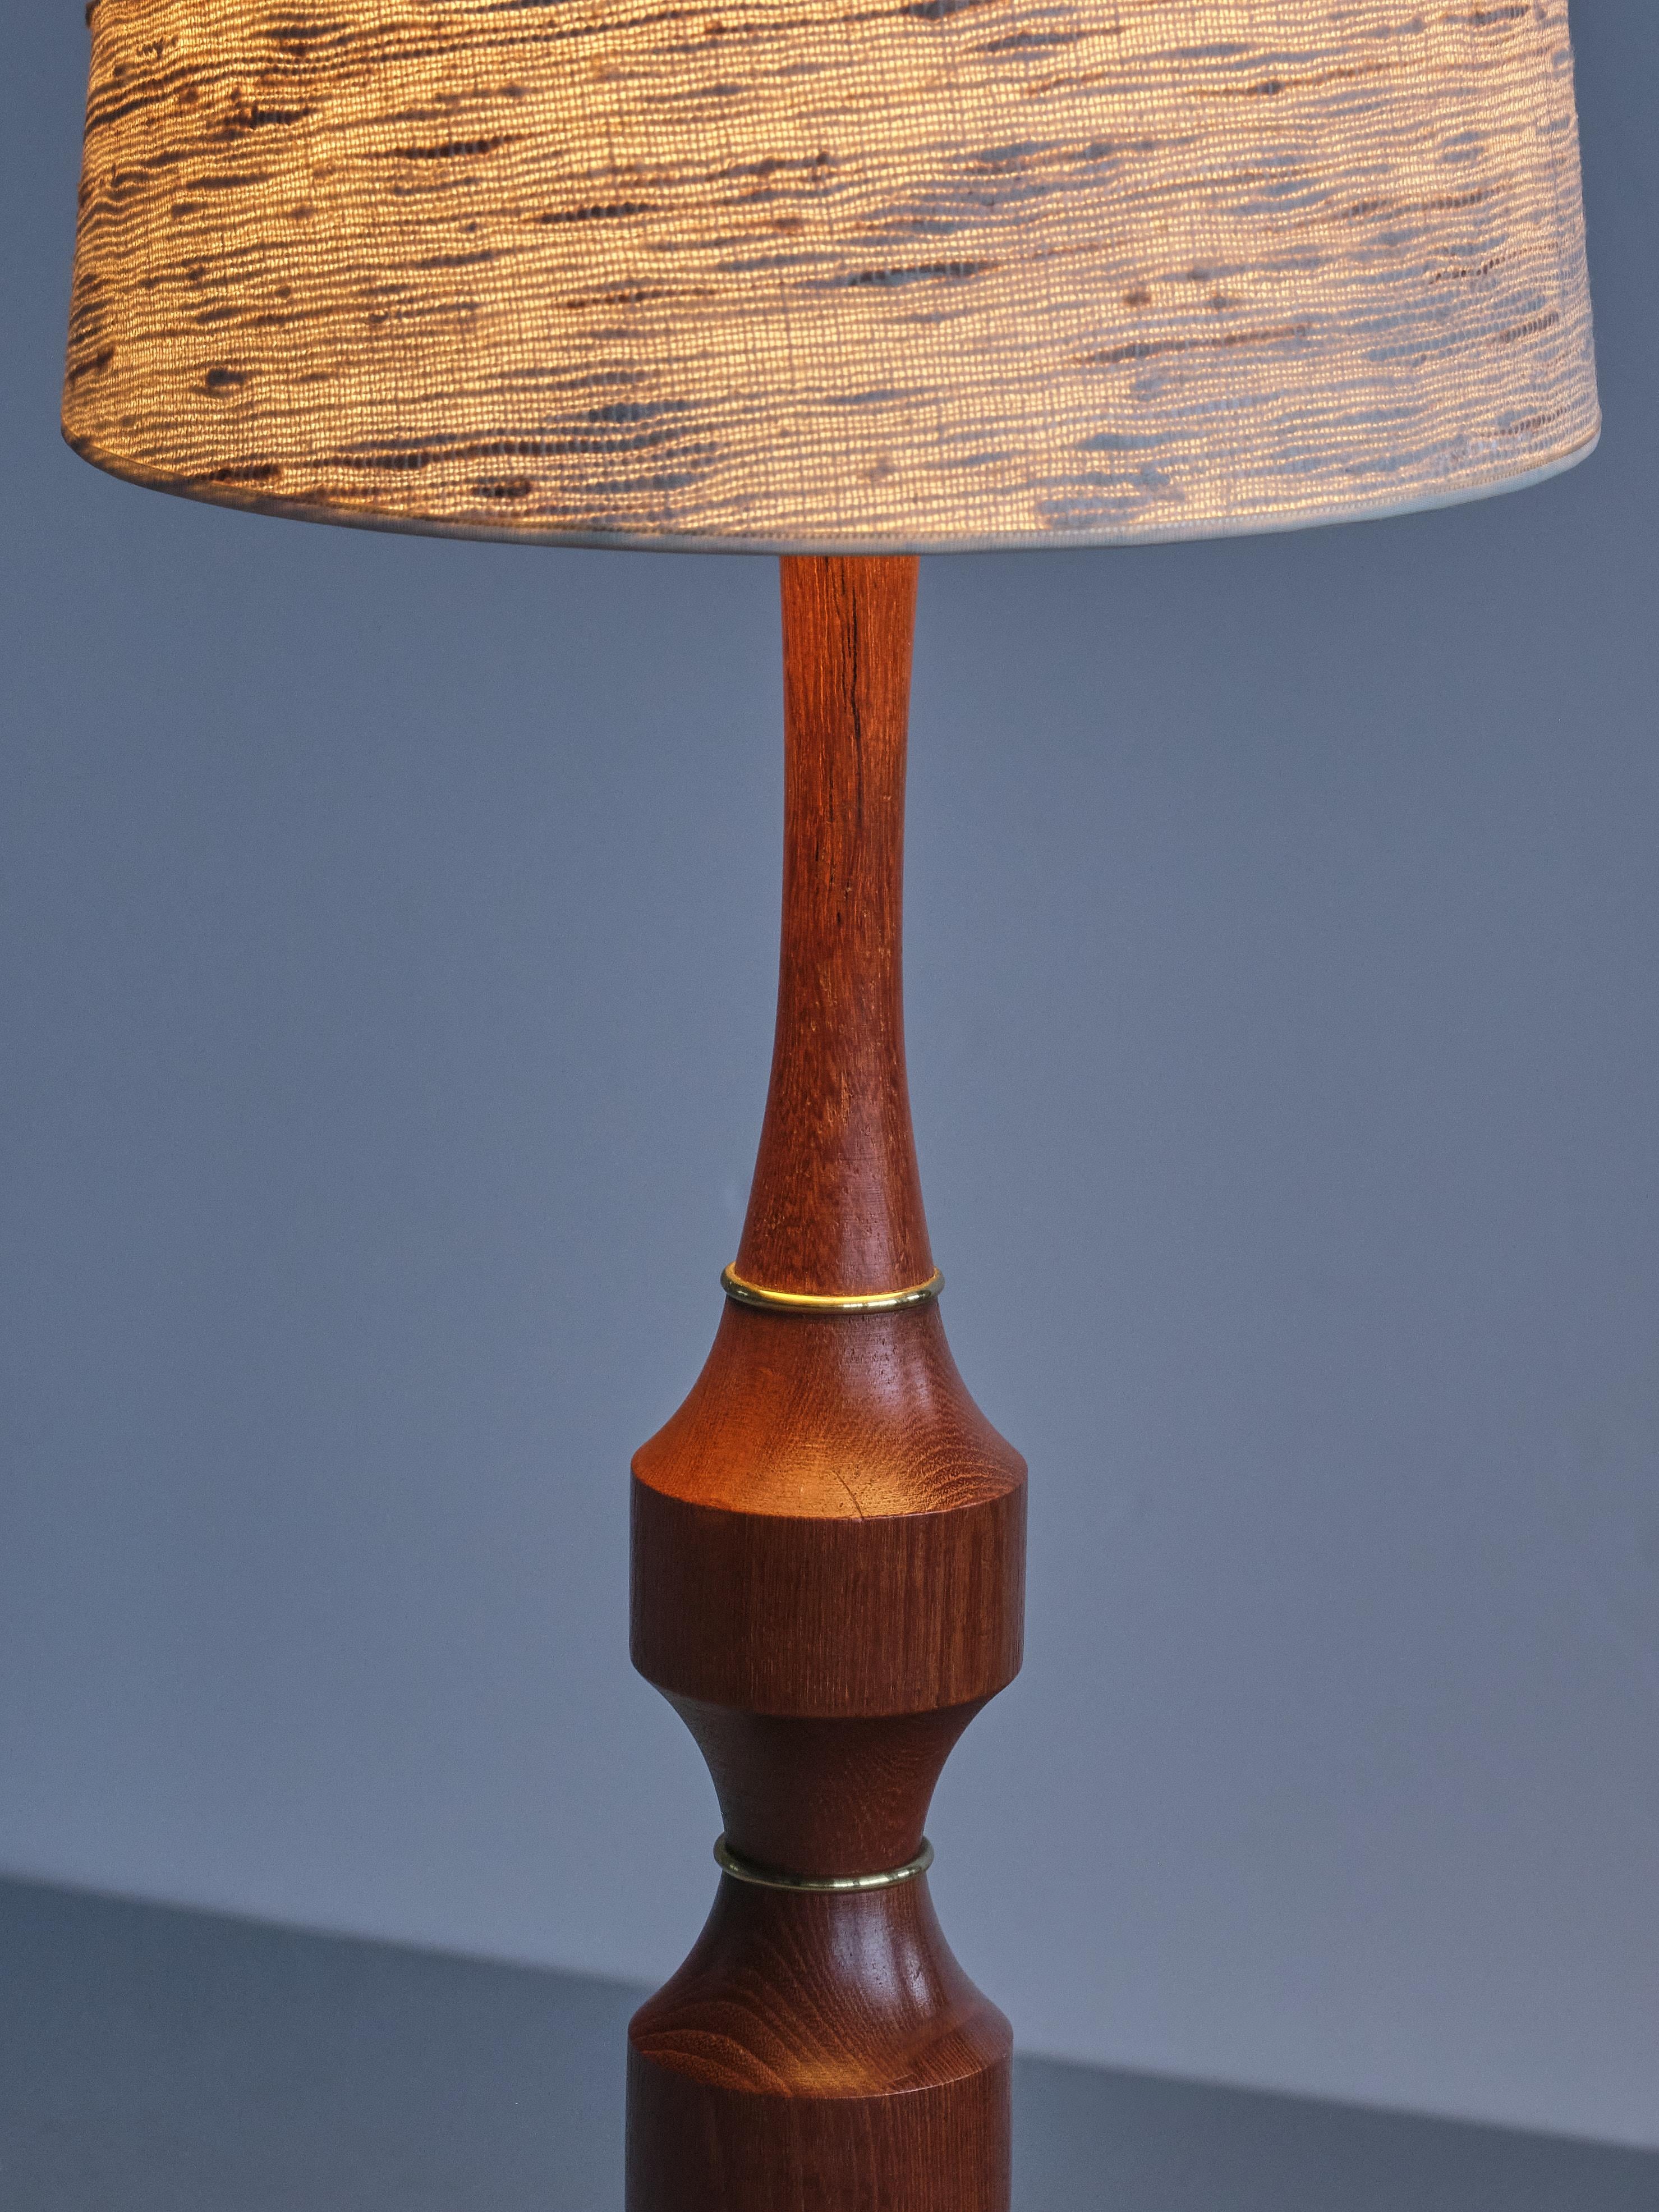 Möllers Armatur Eskilstuna Floor/ Table Lamp in Teak, Brass, Silk, Sweden, 1950s For Sale 7